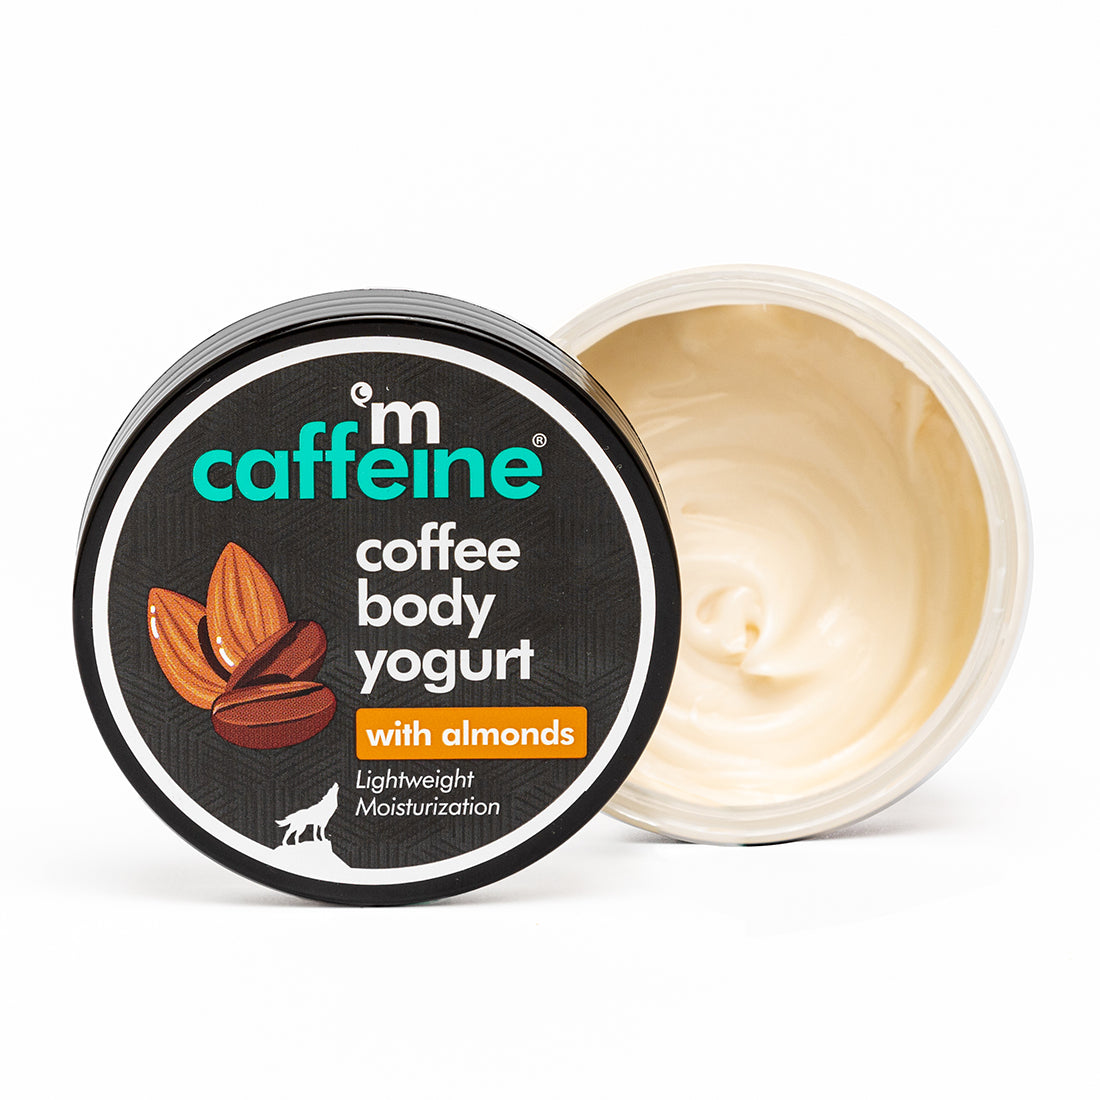 mCaffeine Coffee Body Yogurt with Almonds